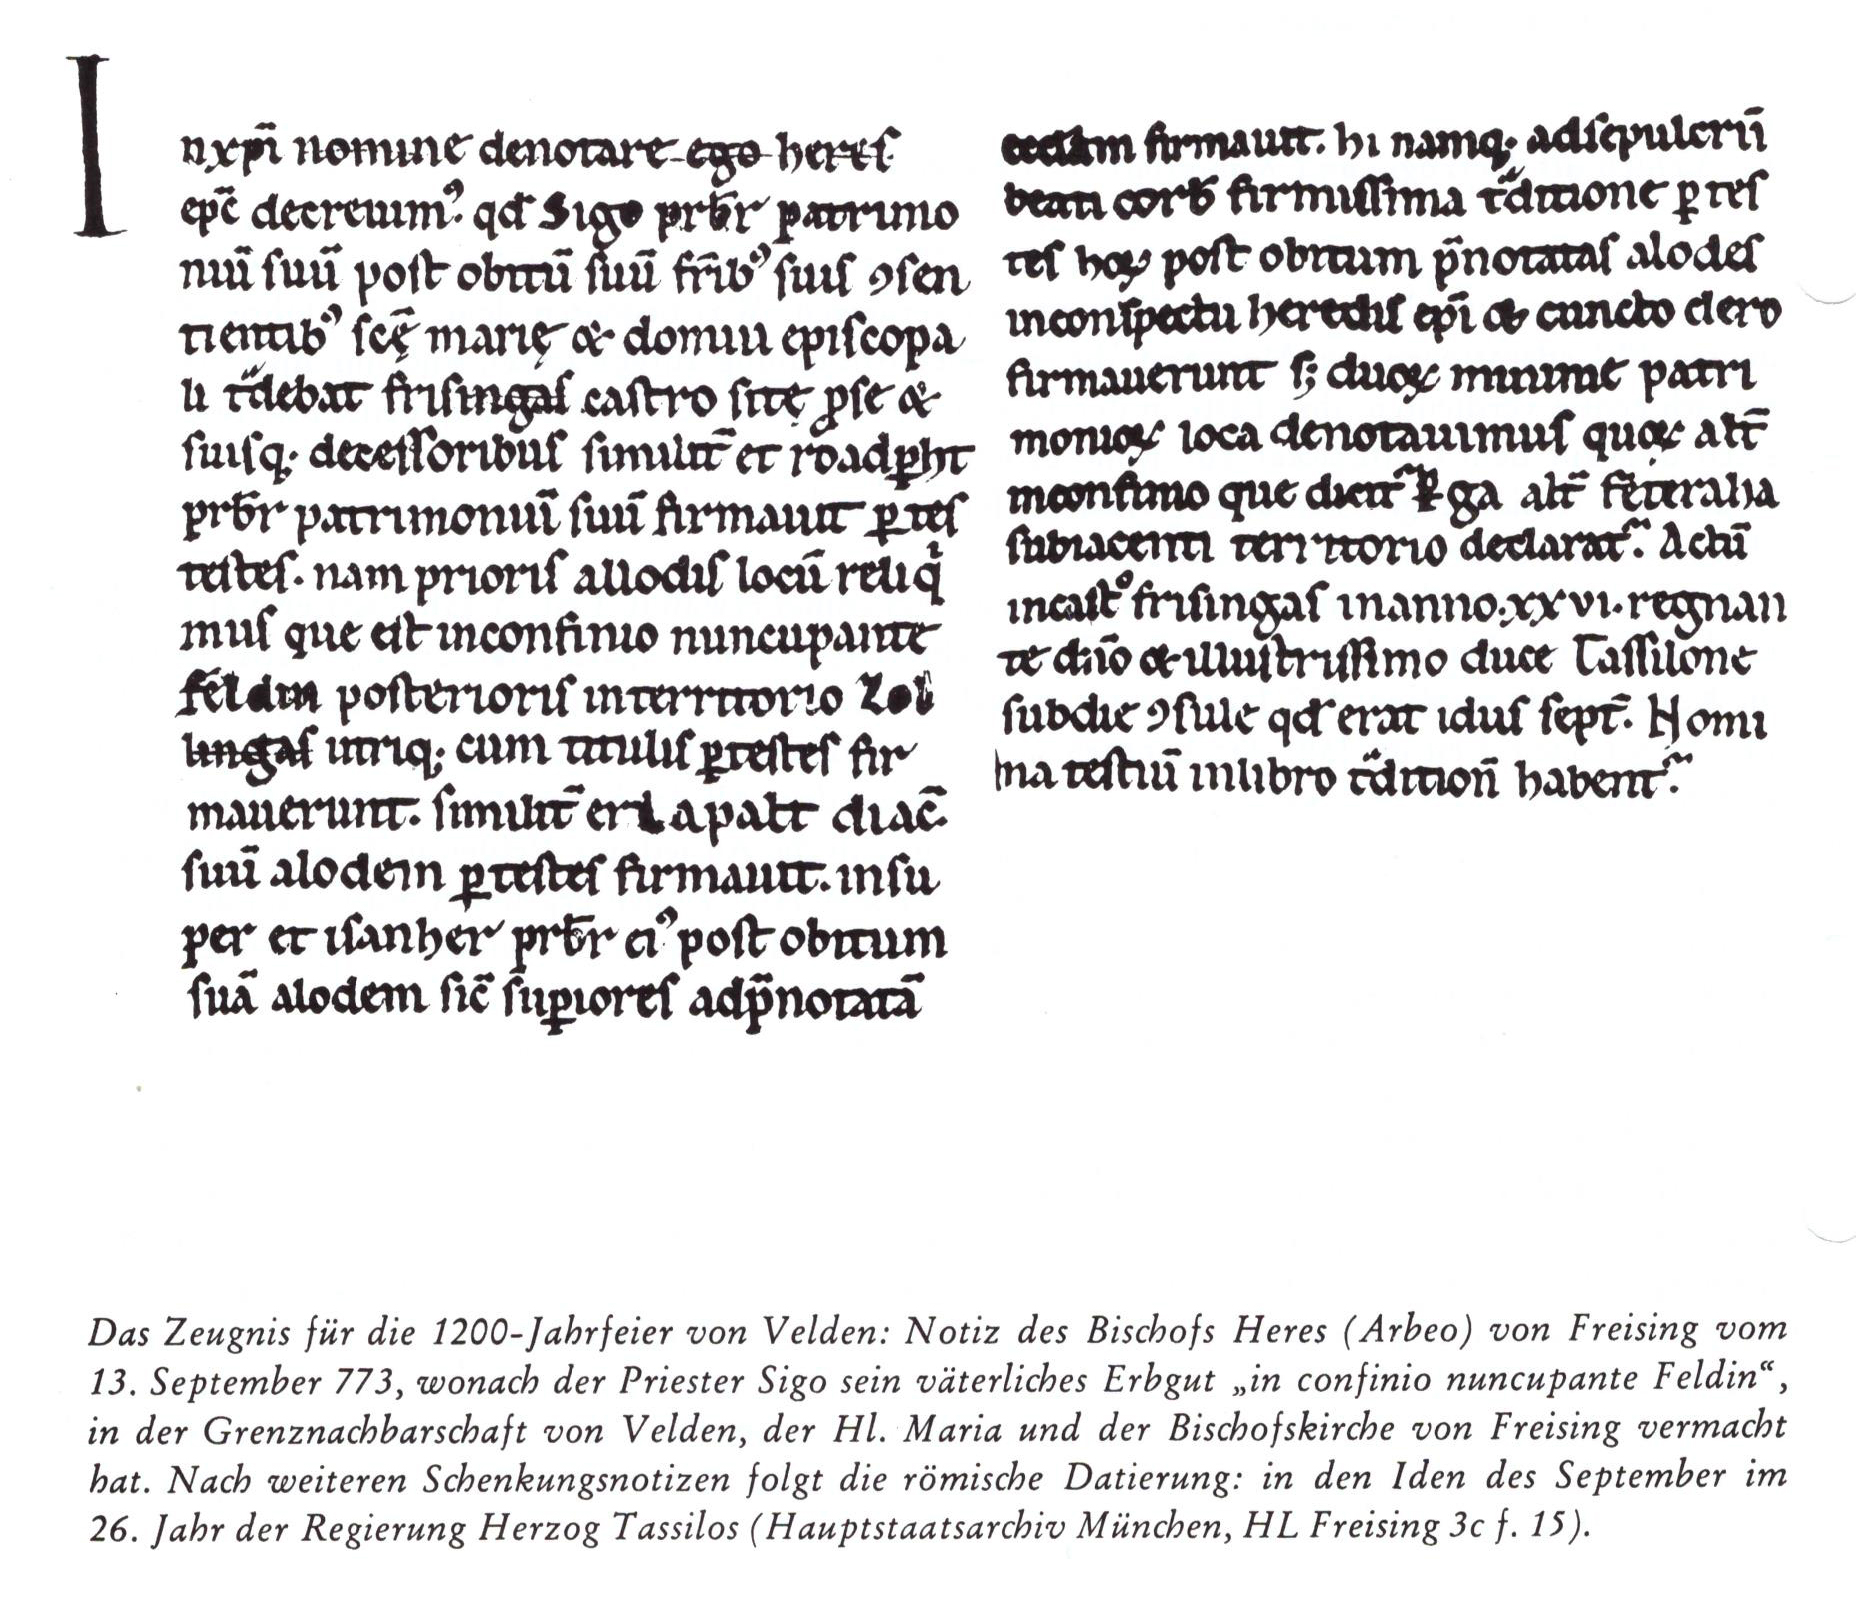 Notiz des Bischofs Heres von Freising vom 13. September 773